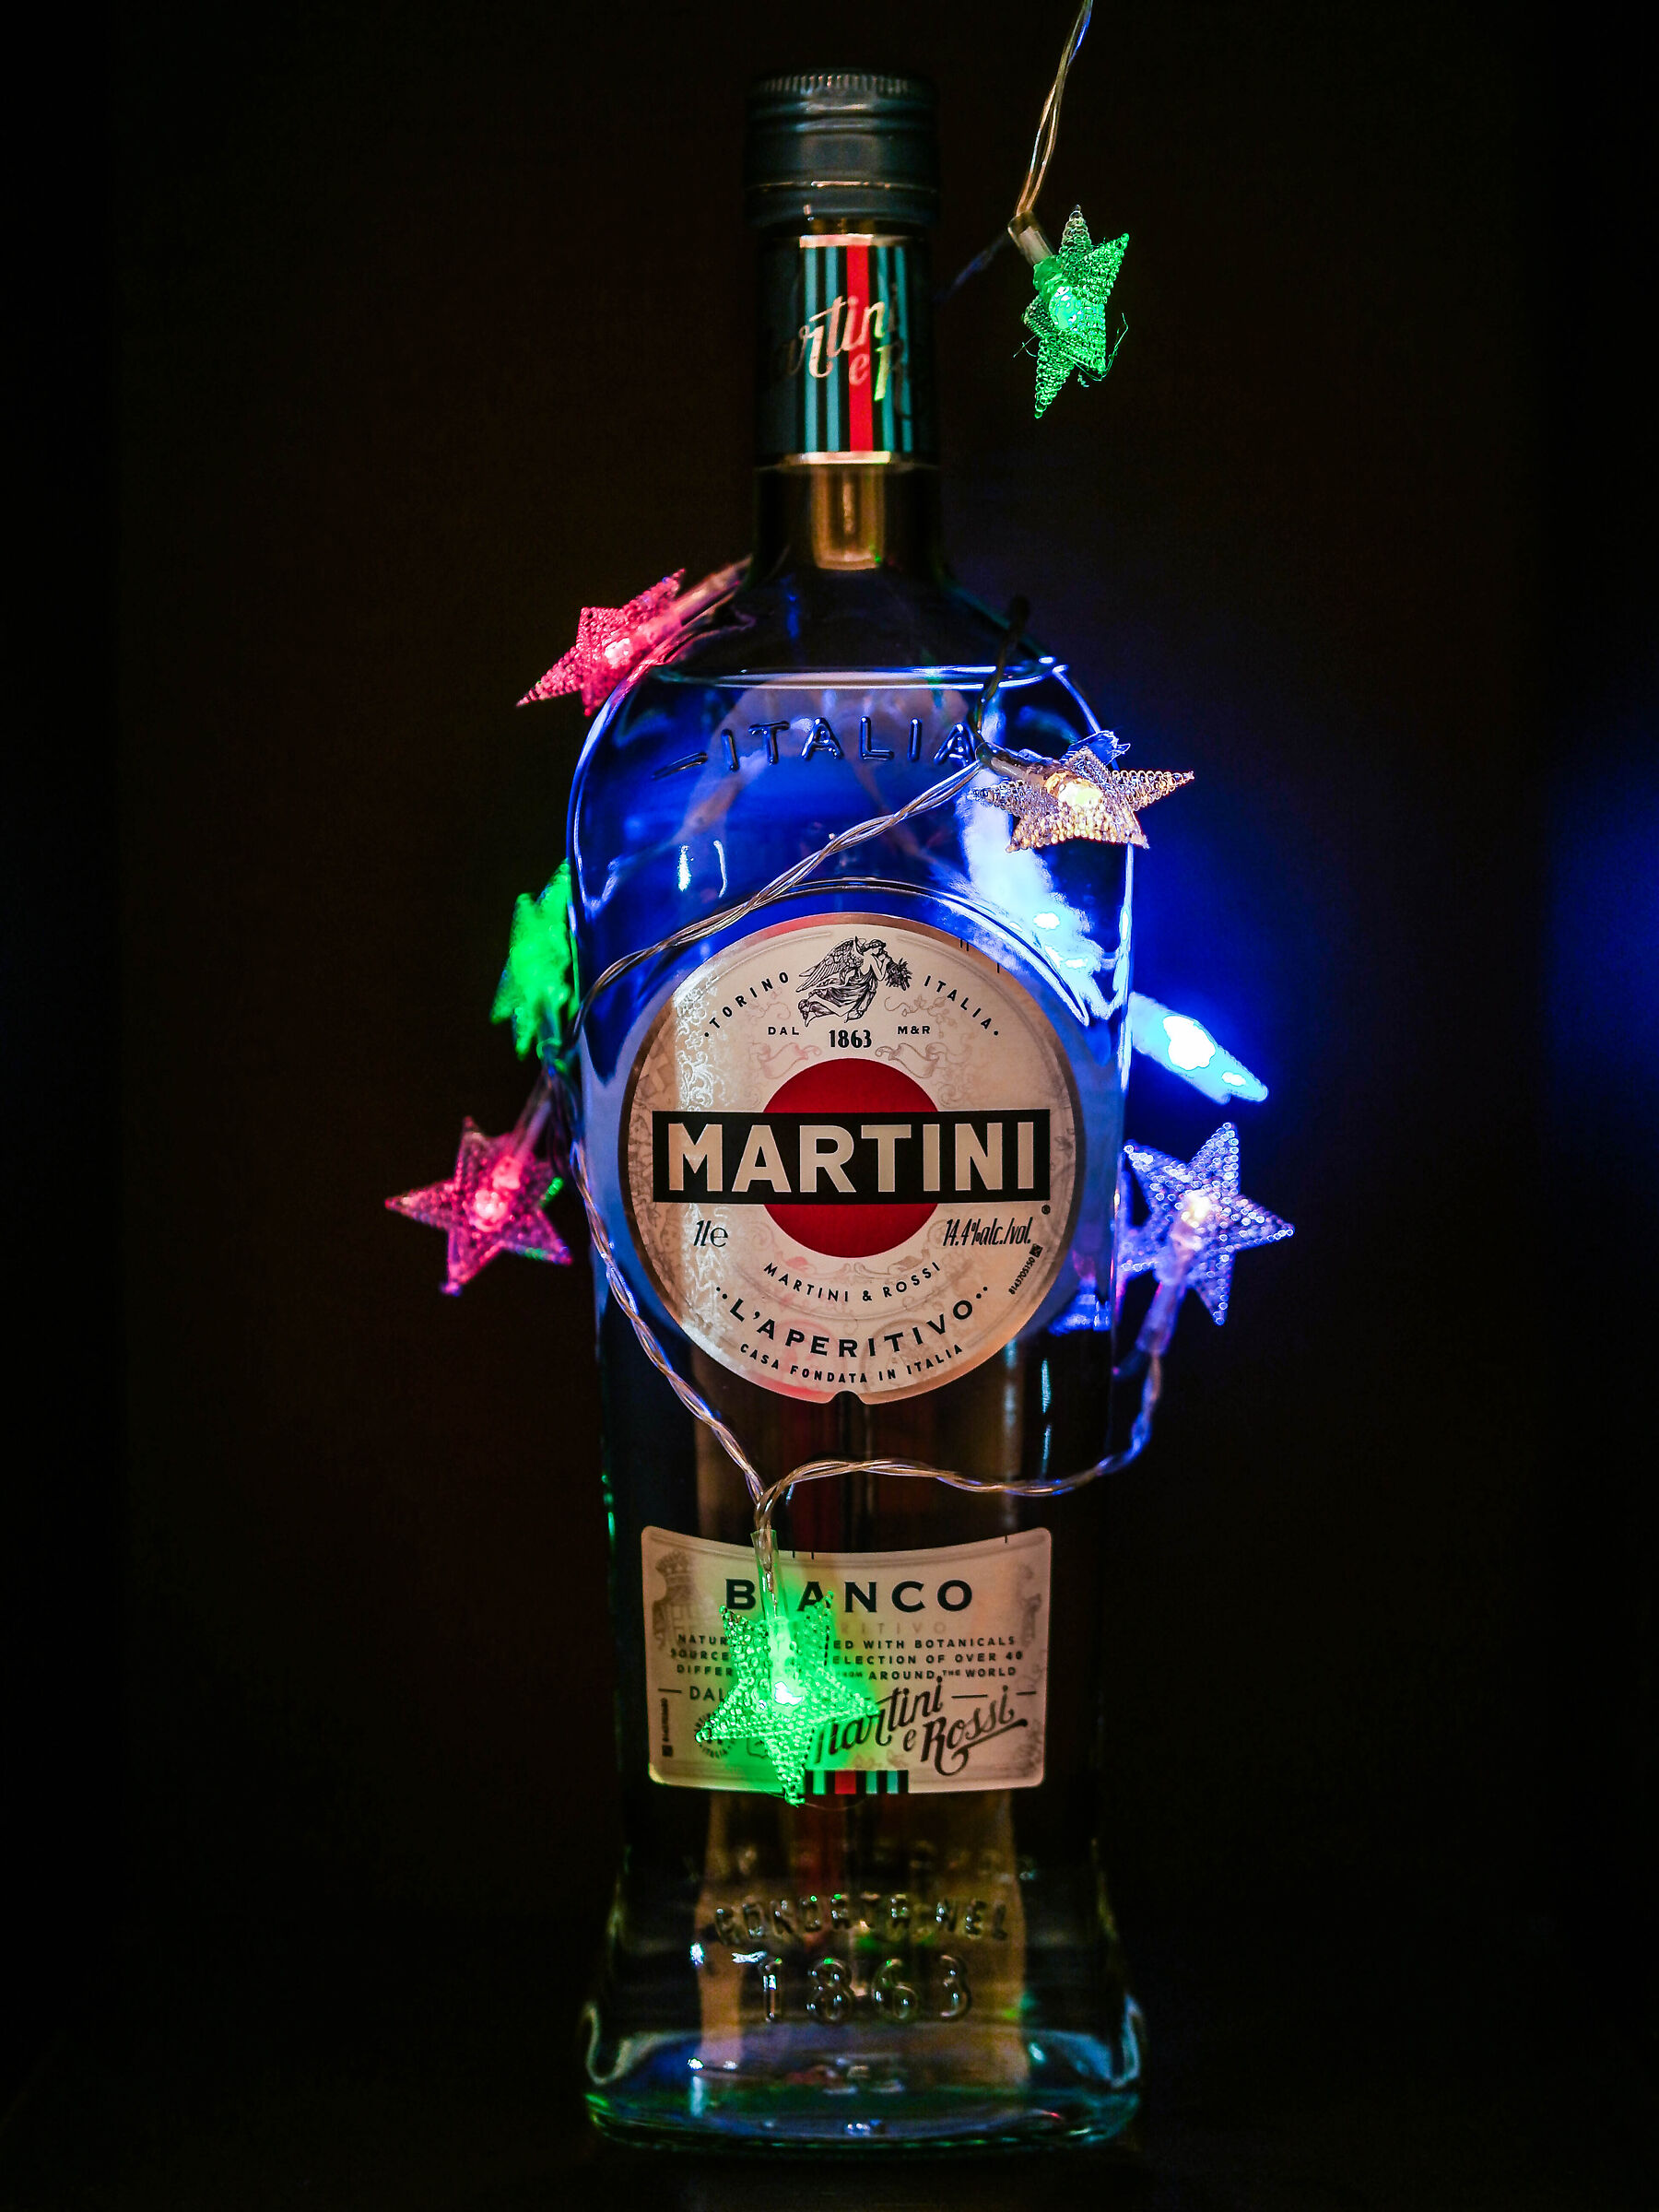 Martini bottle...